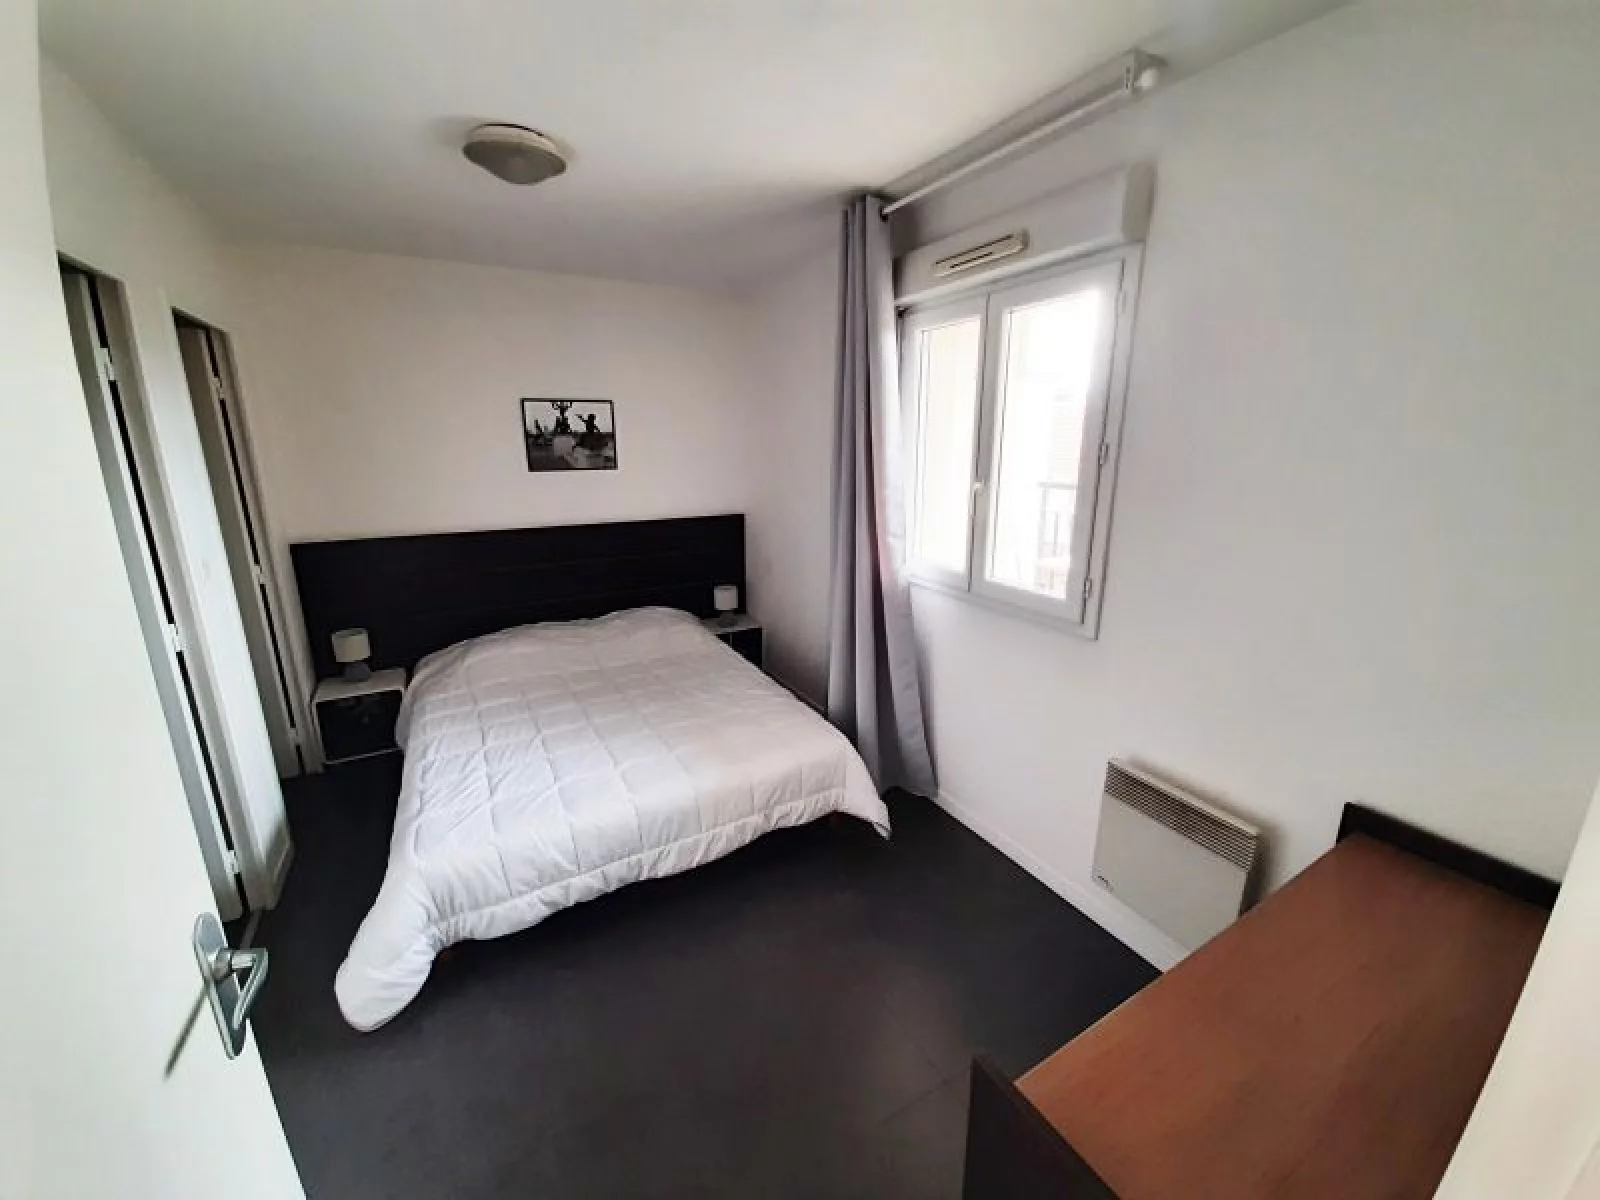 Location appartement meublé 2 pièces 42m² (Paris est - Bry sur Marne)